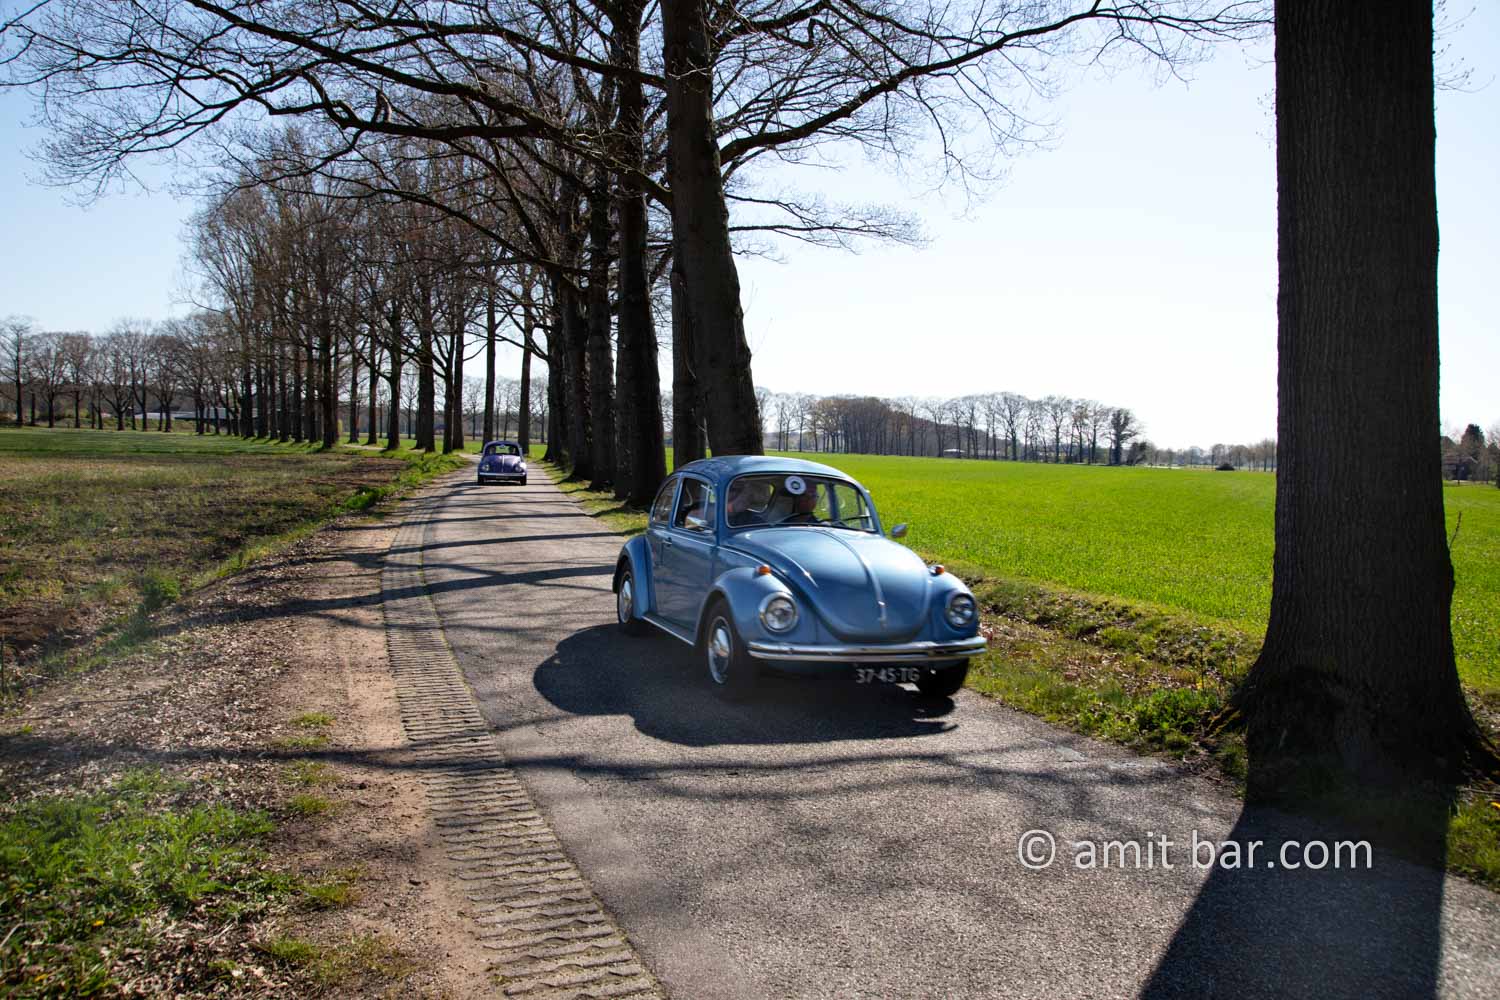 Landscape Spring 2021 V: Spring time in the Achterhoek, The Netherlands